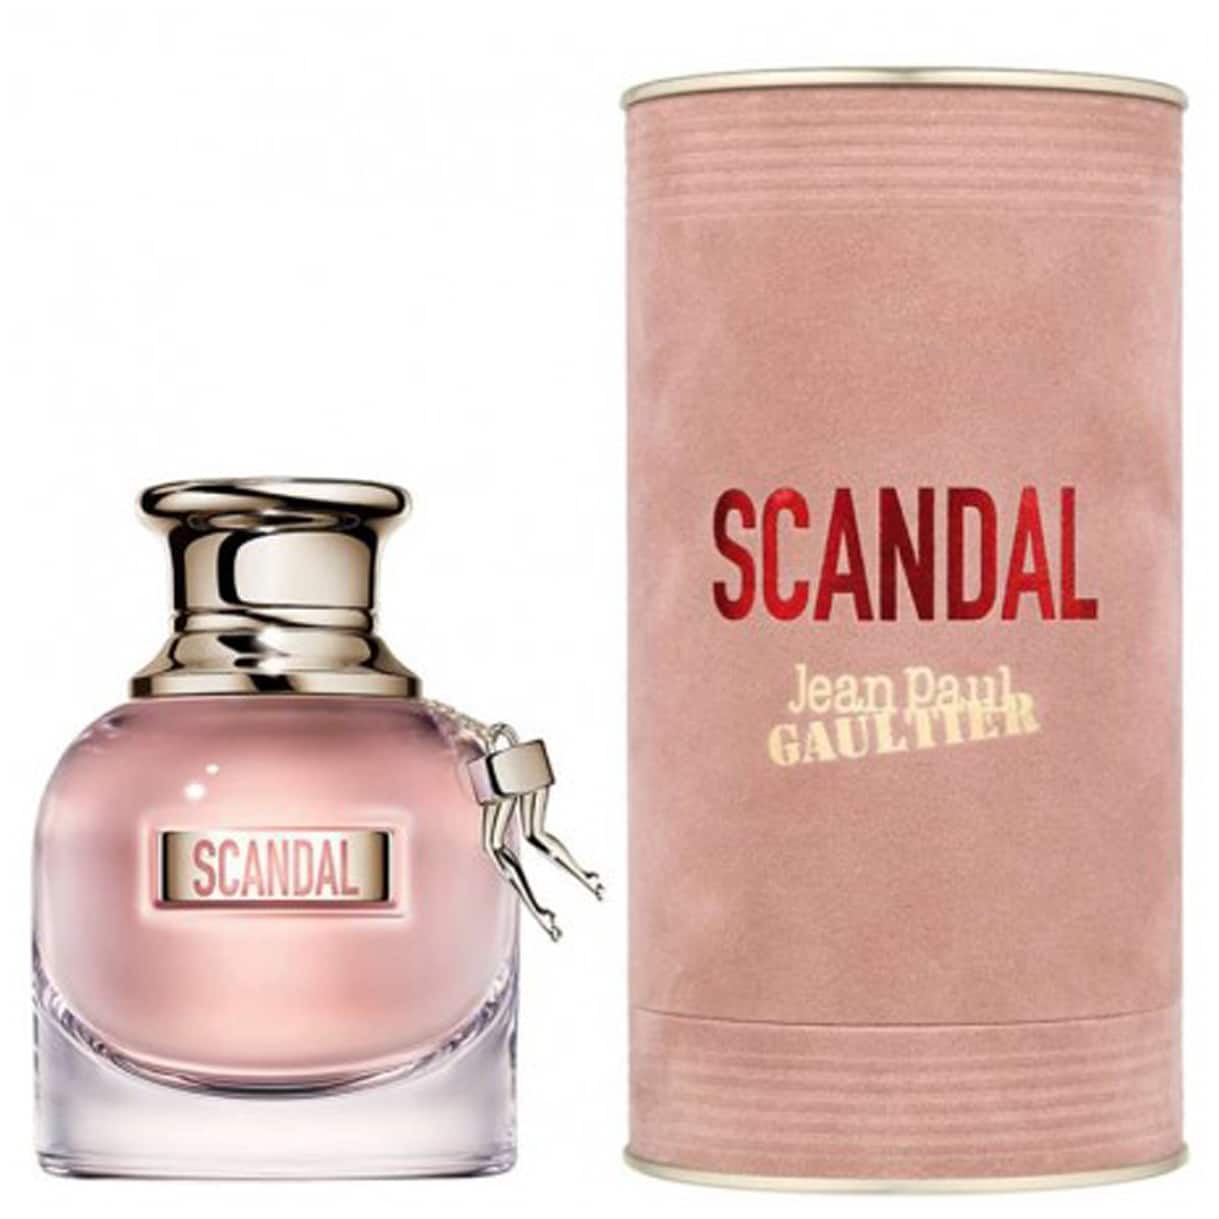 SCANDAL DE JEAN PAUL GAULTIER - Colonia / Perfume - Eau de Parfum ...